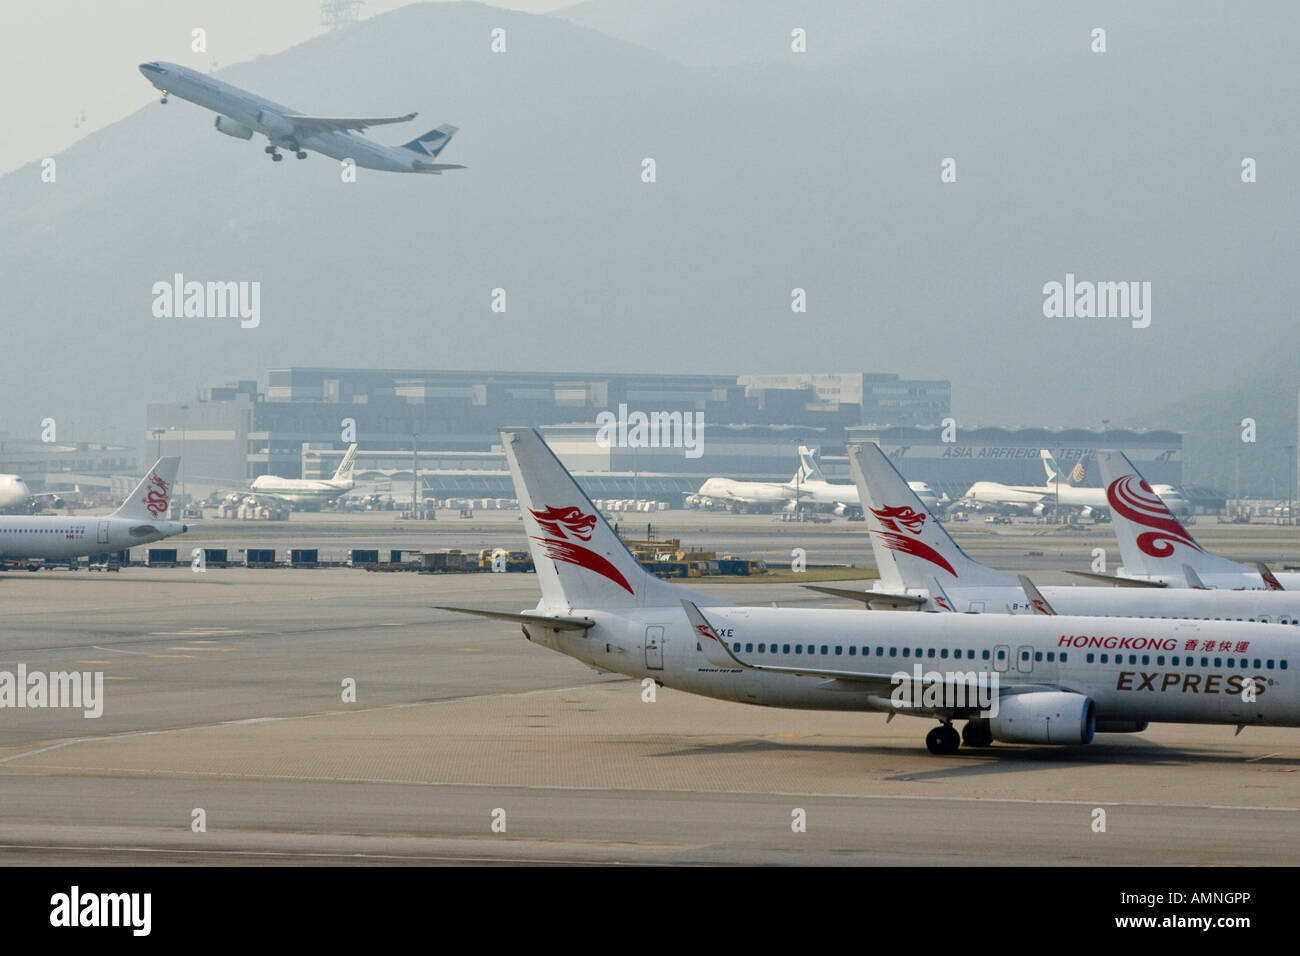 Hong Kong Express Avion et Cathay Pacific Jet qui décolle de l'Aéroport International de Hong Kong HKG Banque D'Images